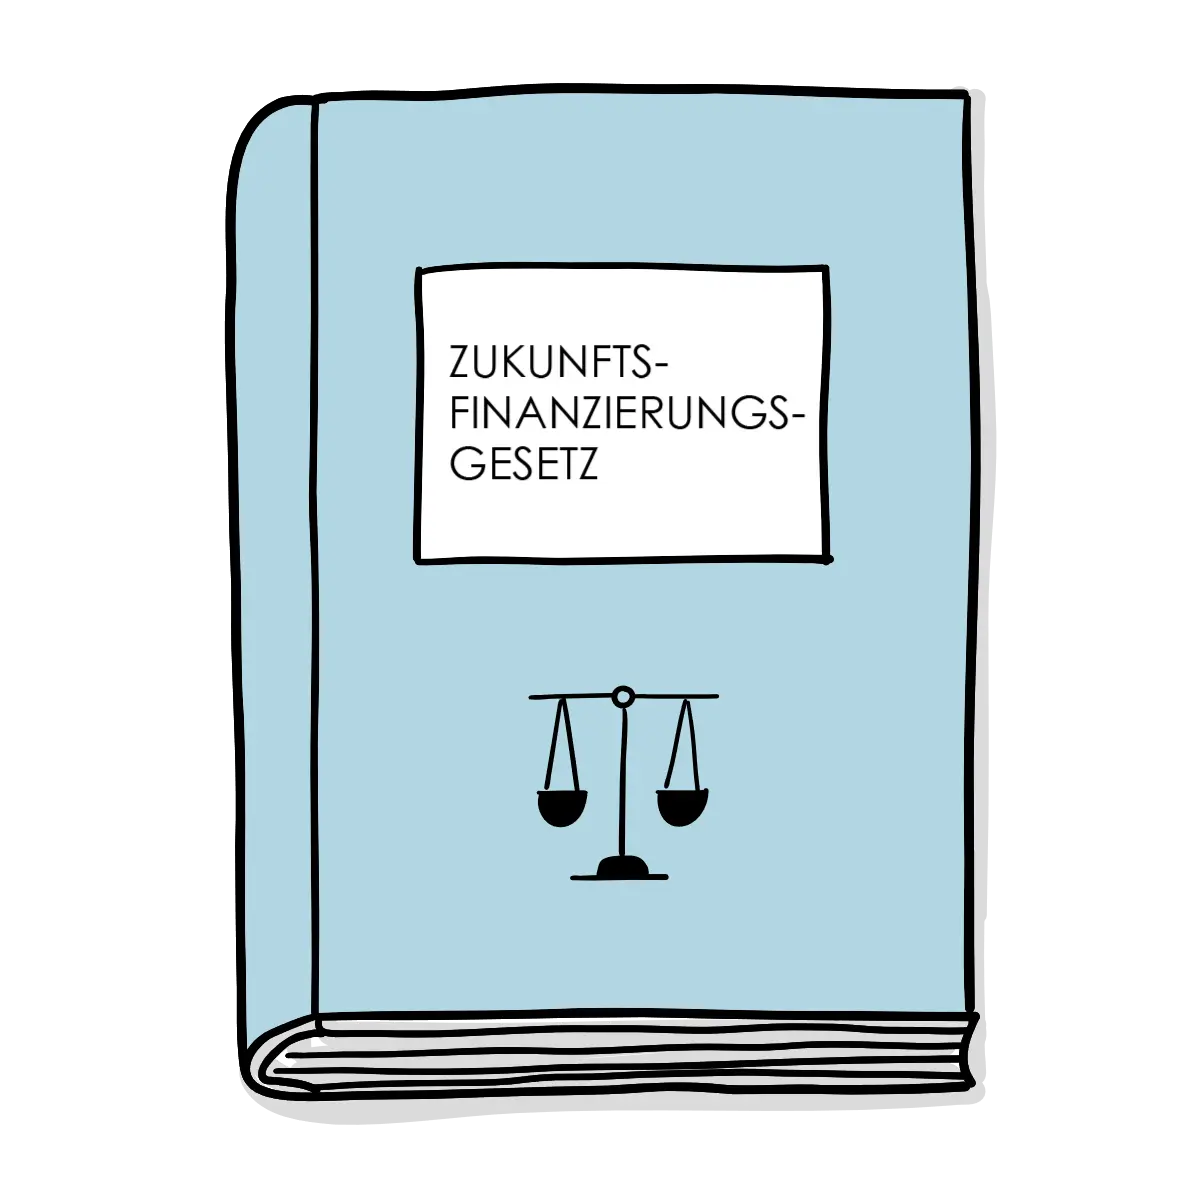 Zukunftsfinanzierungsgesetz: Die Rolle von elektronischen Wertpapieren